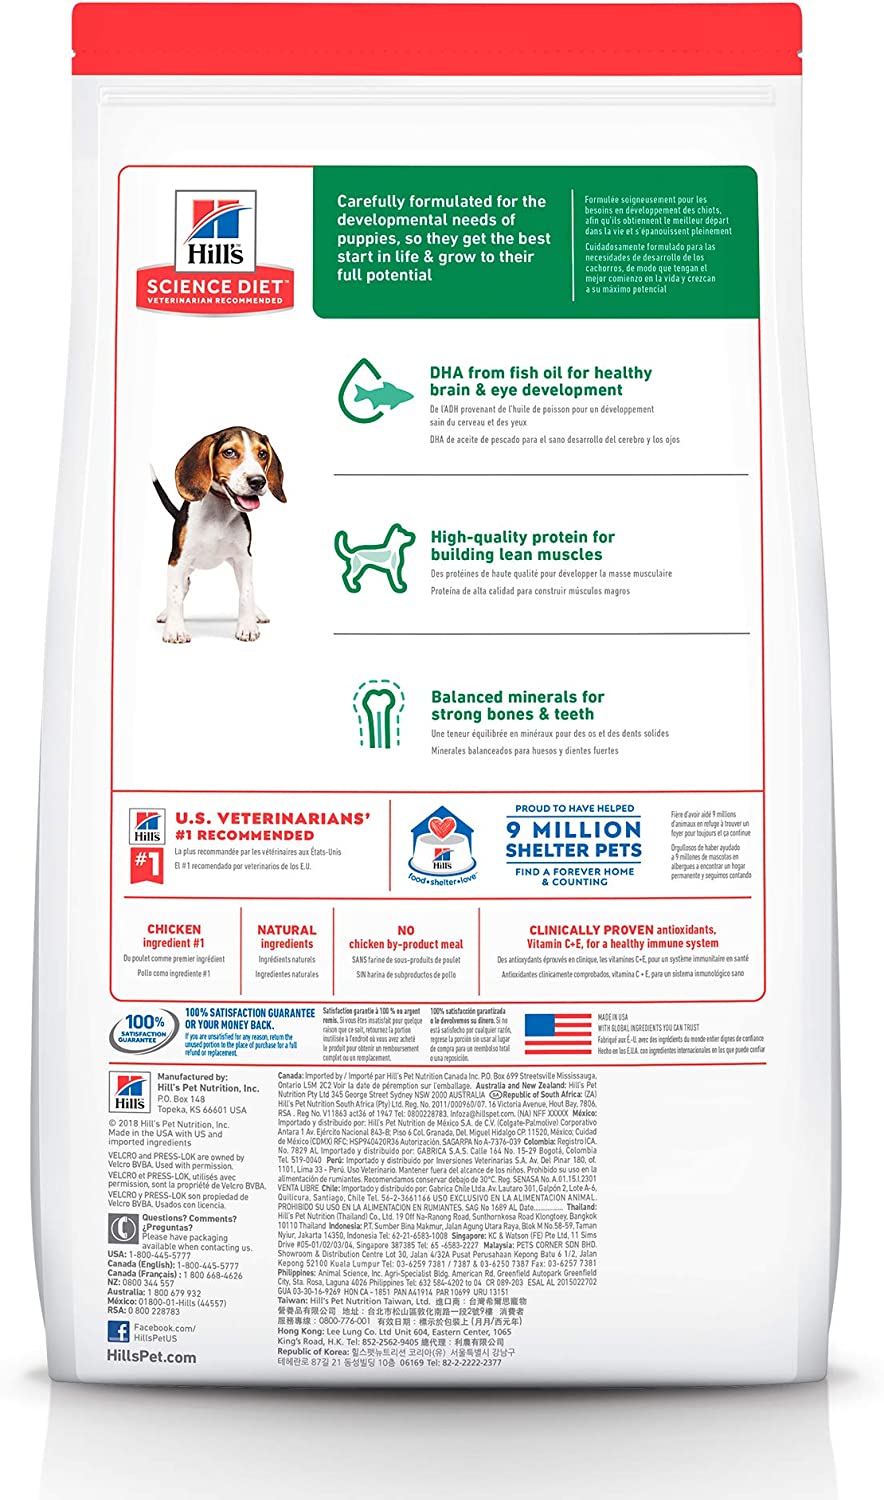 Hill's Science Diet, Alimento para Perro Puppy (Cachorro) Receta Original, Seco (bulto) 2kg